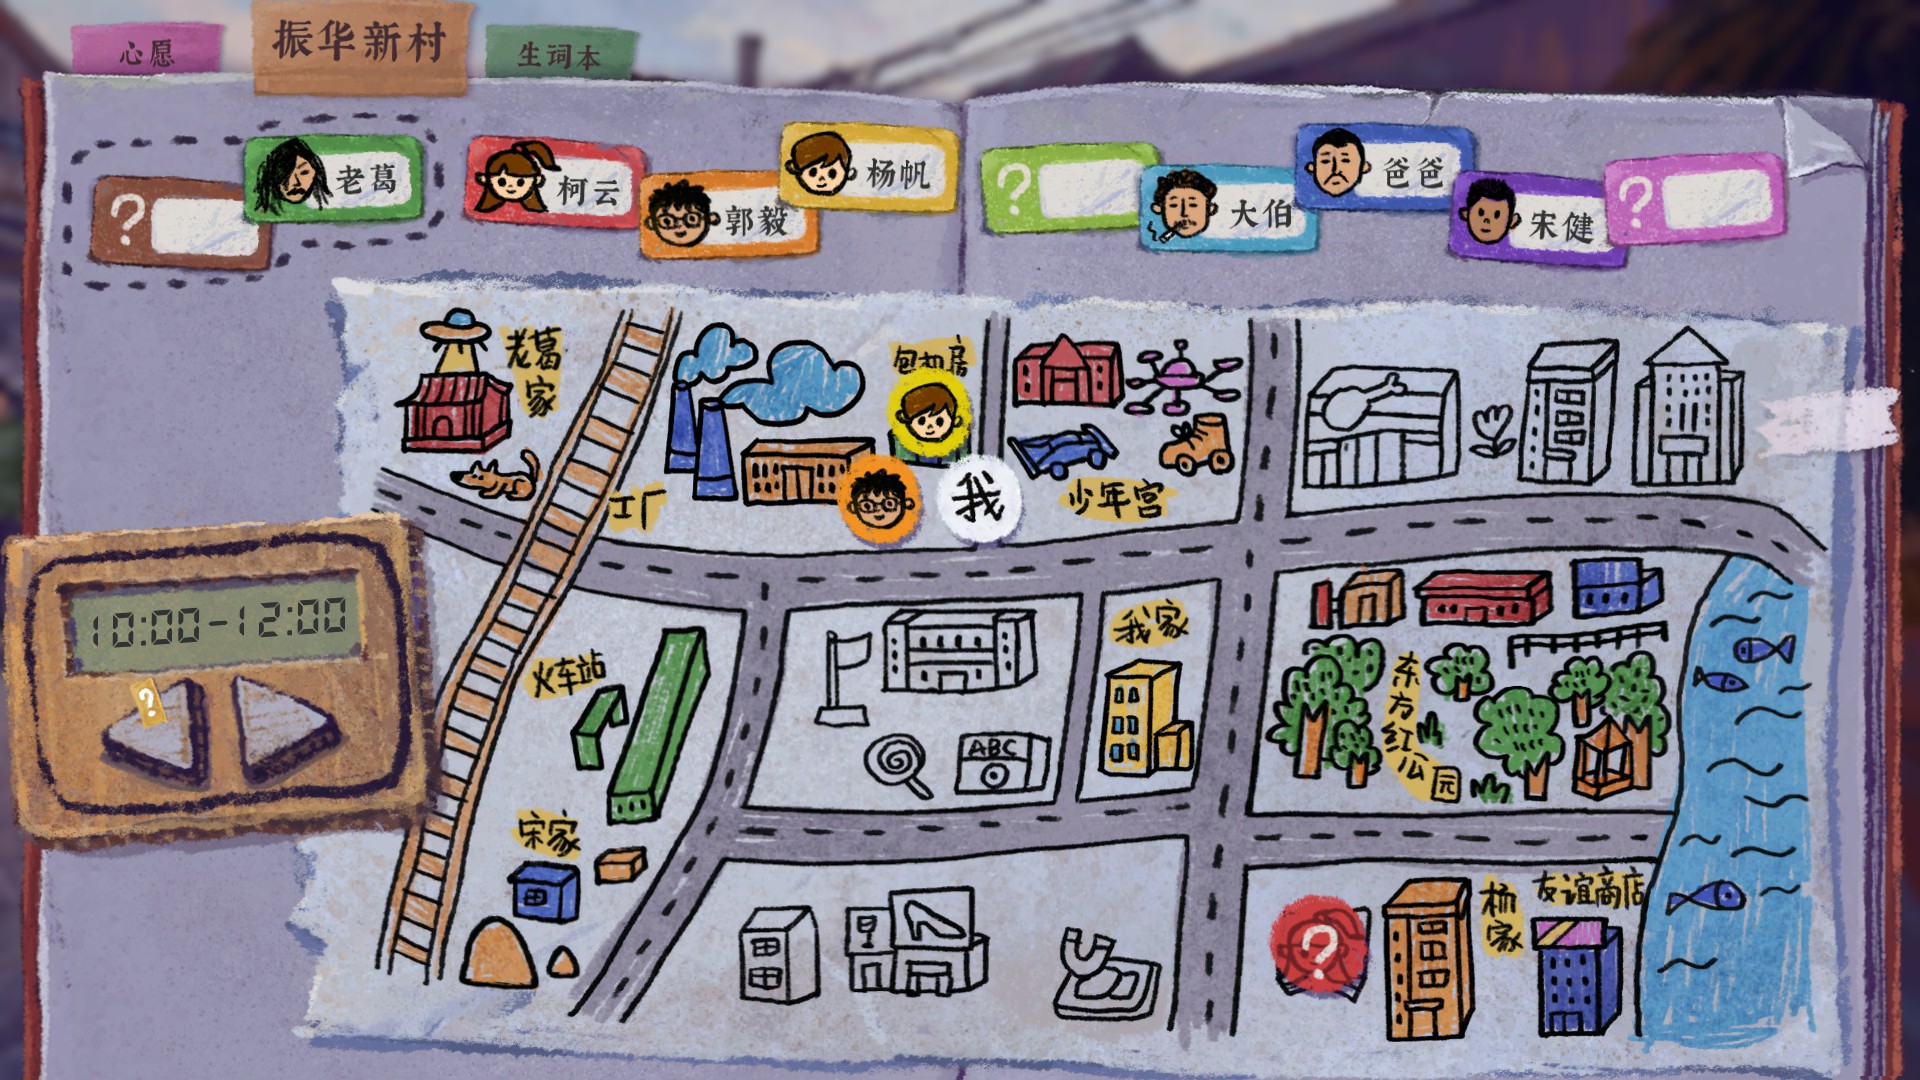 游戏中的地图会显示每一个时间段里的人大概或确定在哪里。